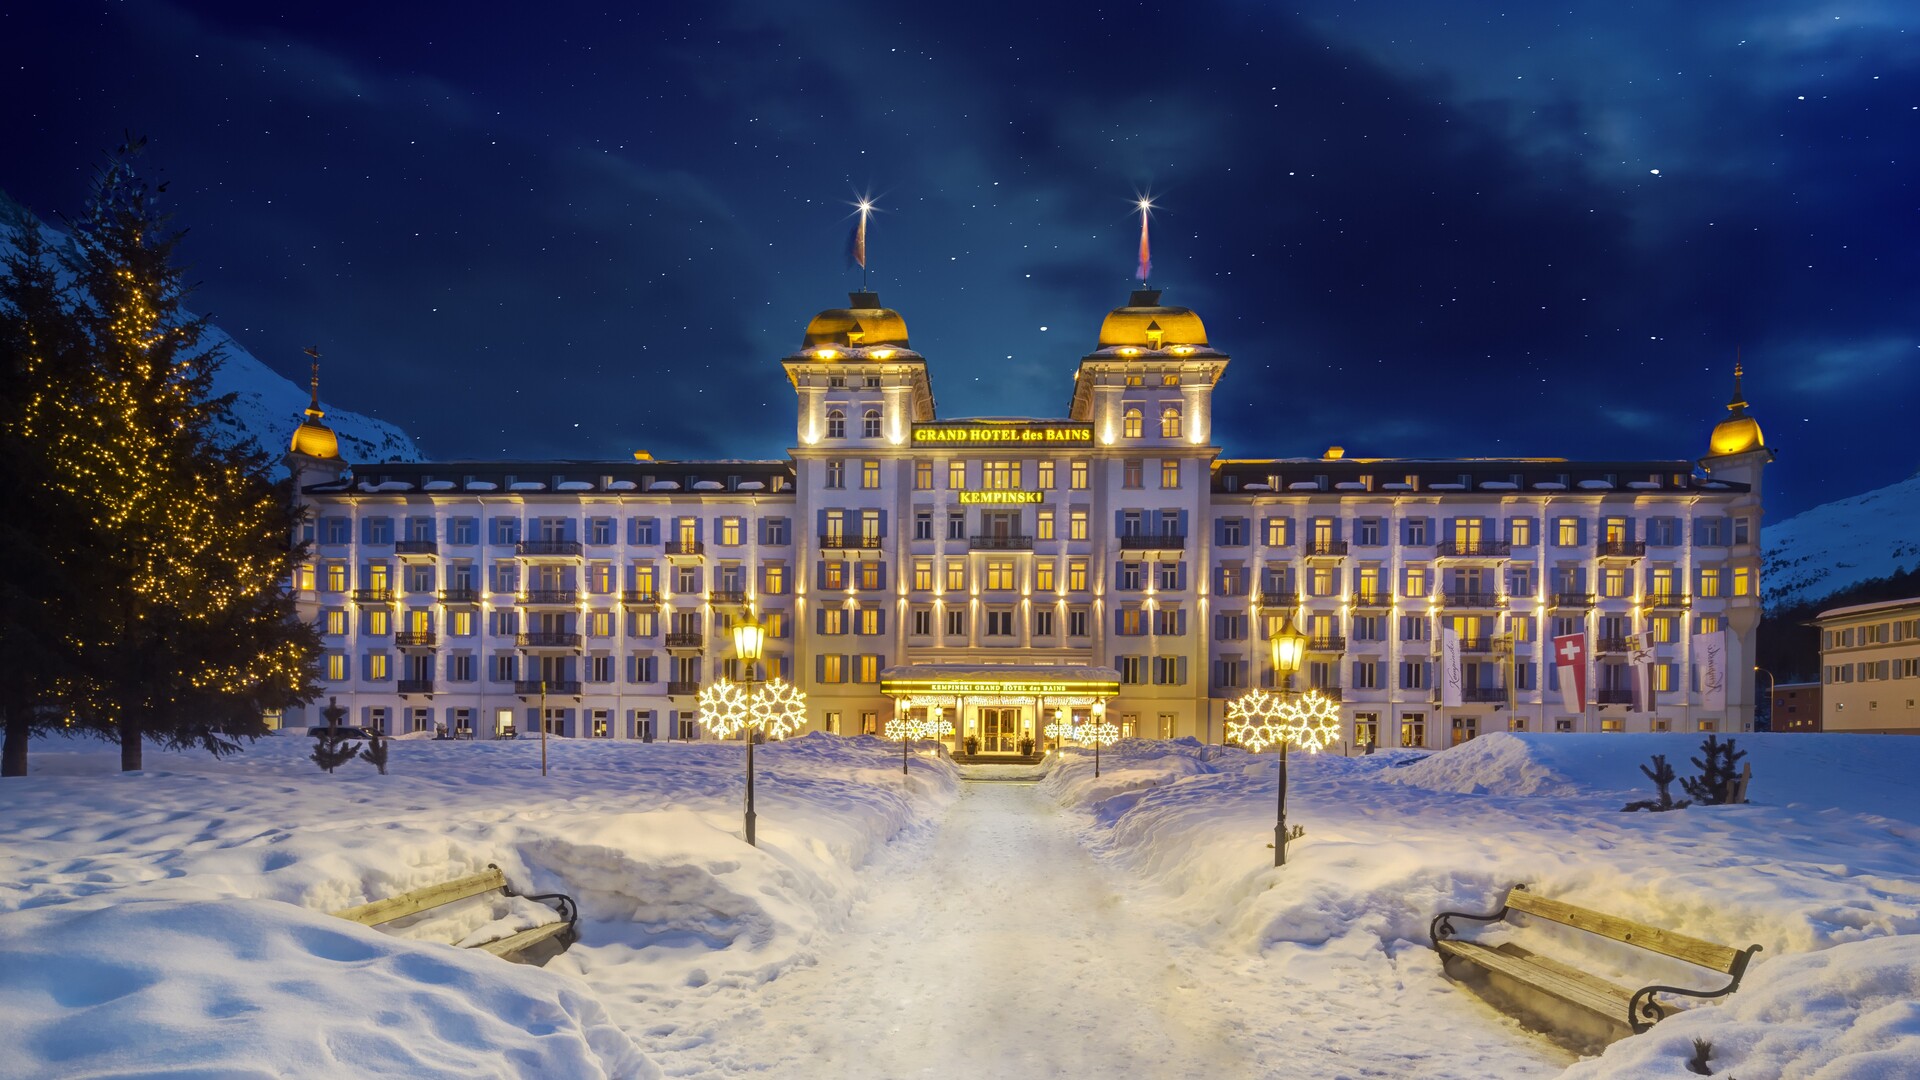 Kempinski Grand Hotel des Bains - slide